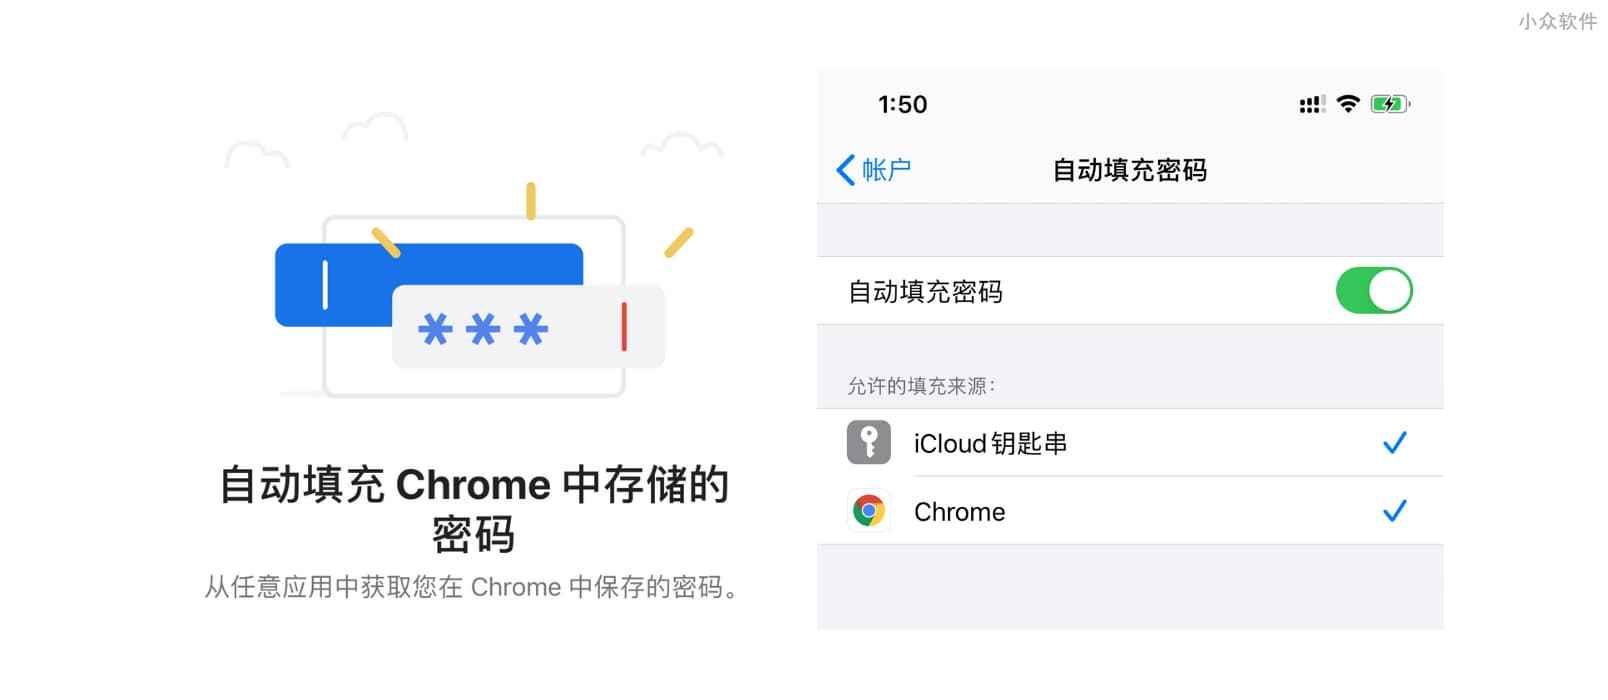 Chrome 已支持在 iOS 同步密码，并在浏览器及第三方应用自动填充密码 1